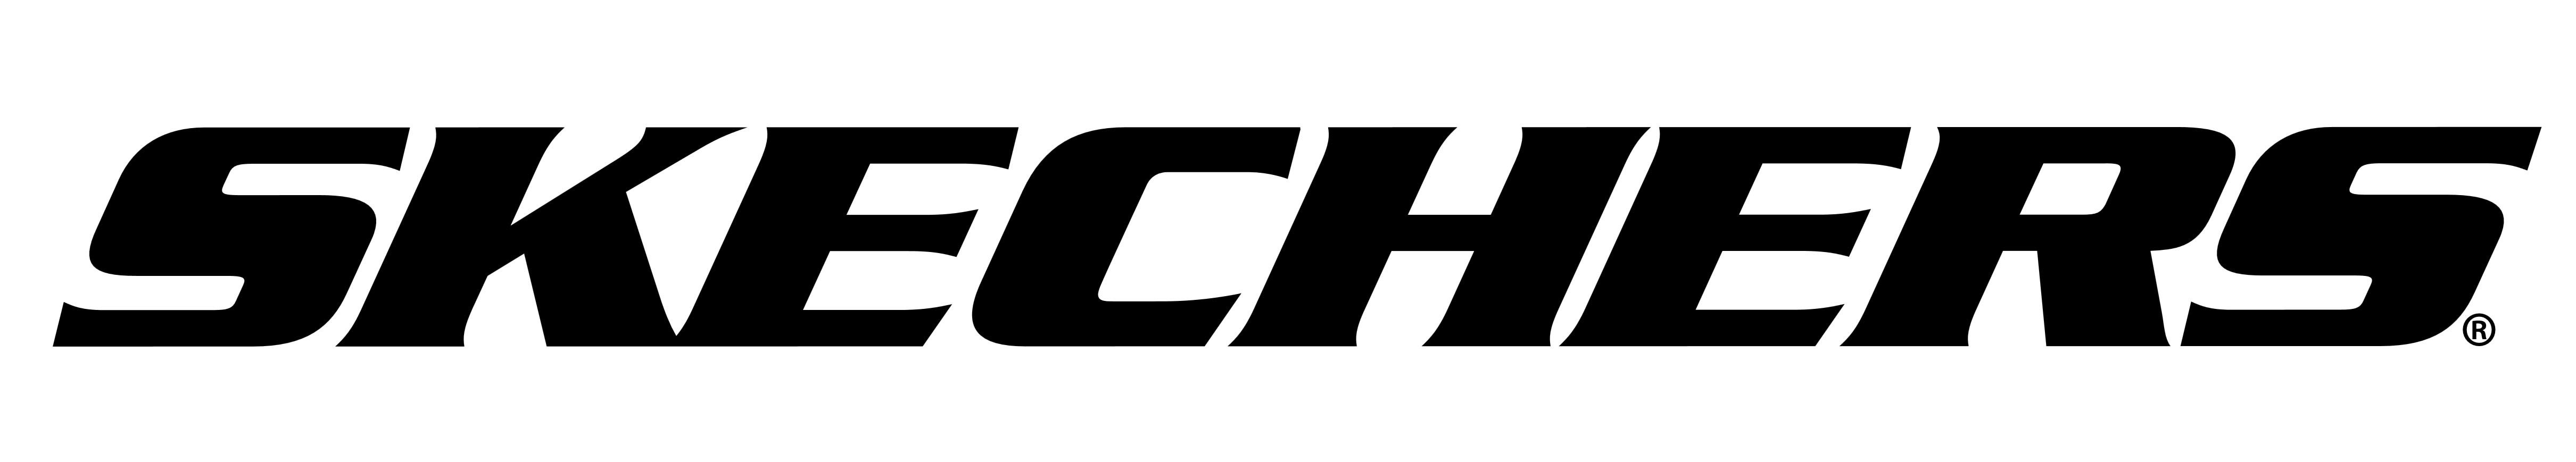 skechers new logo